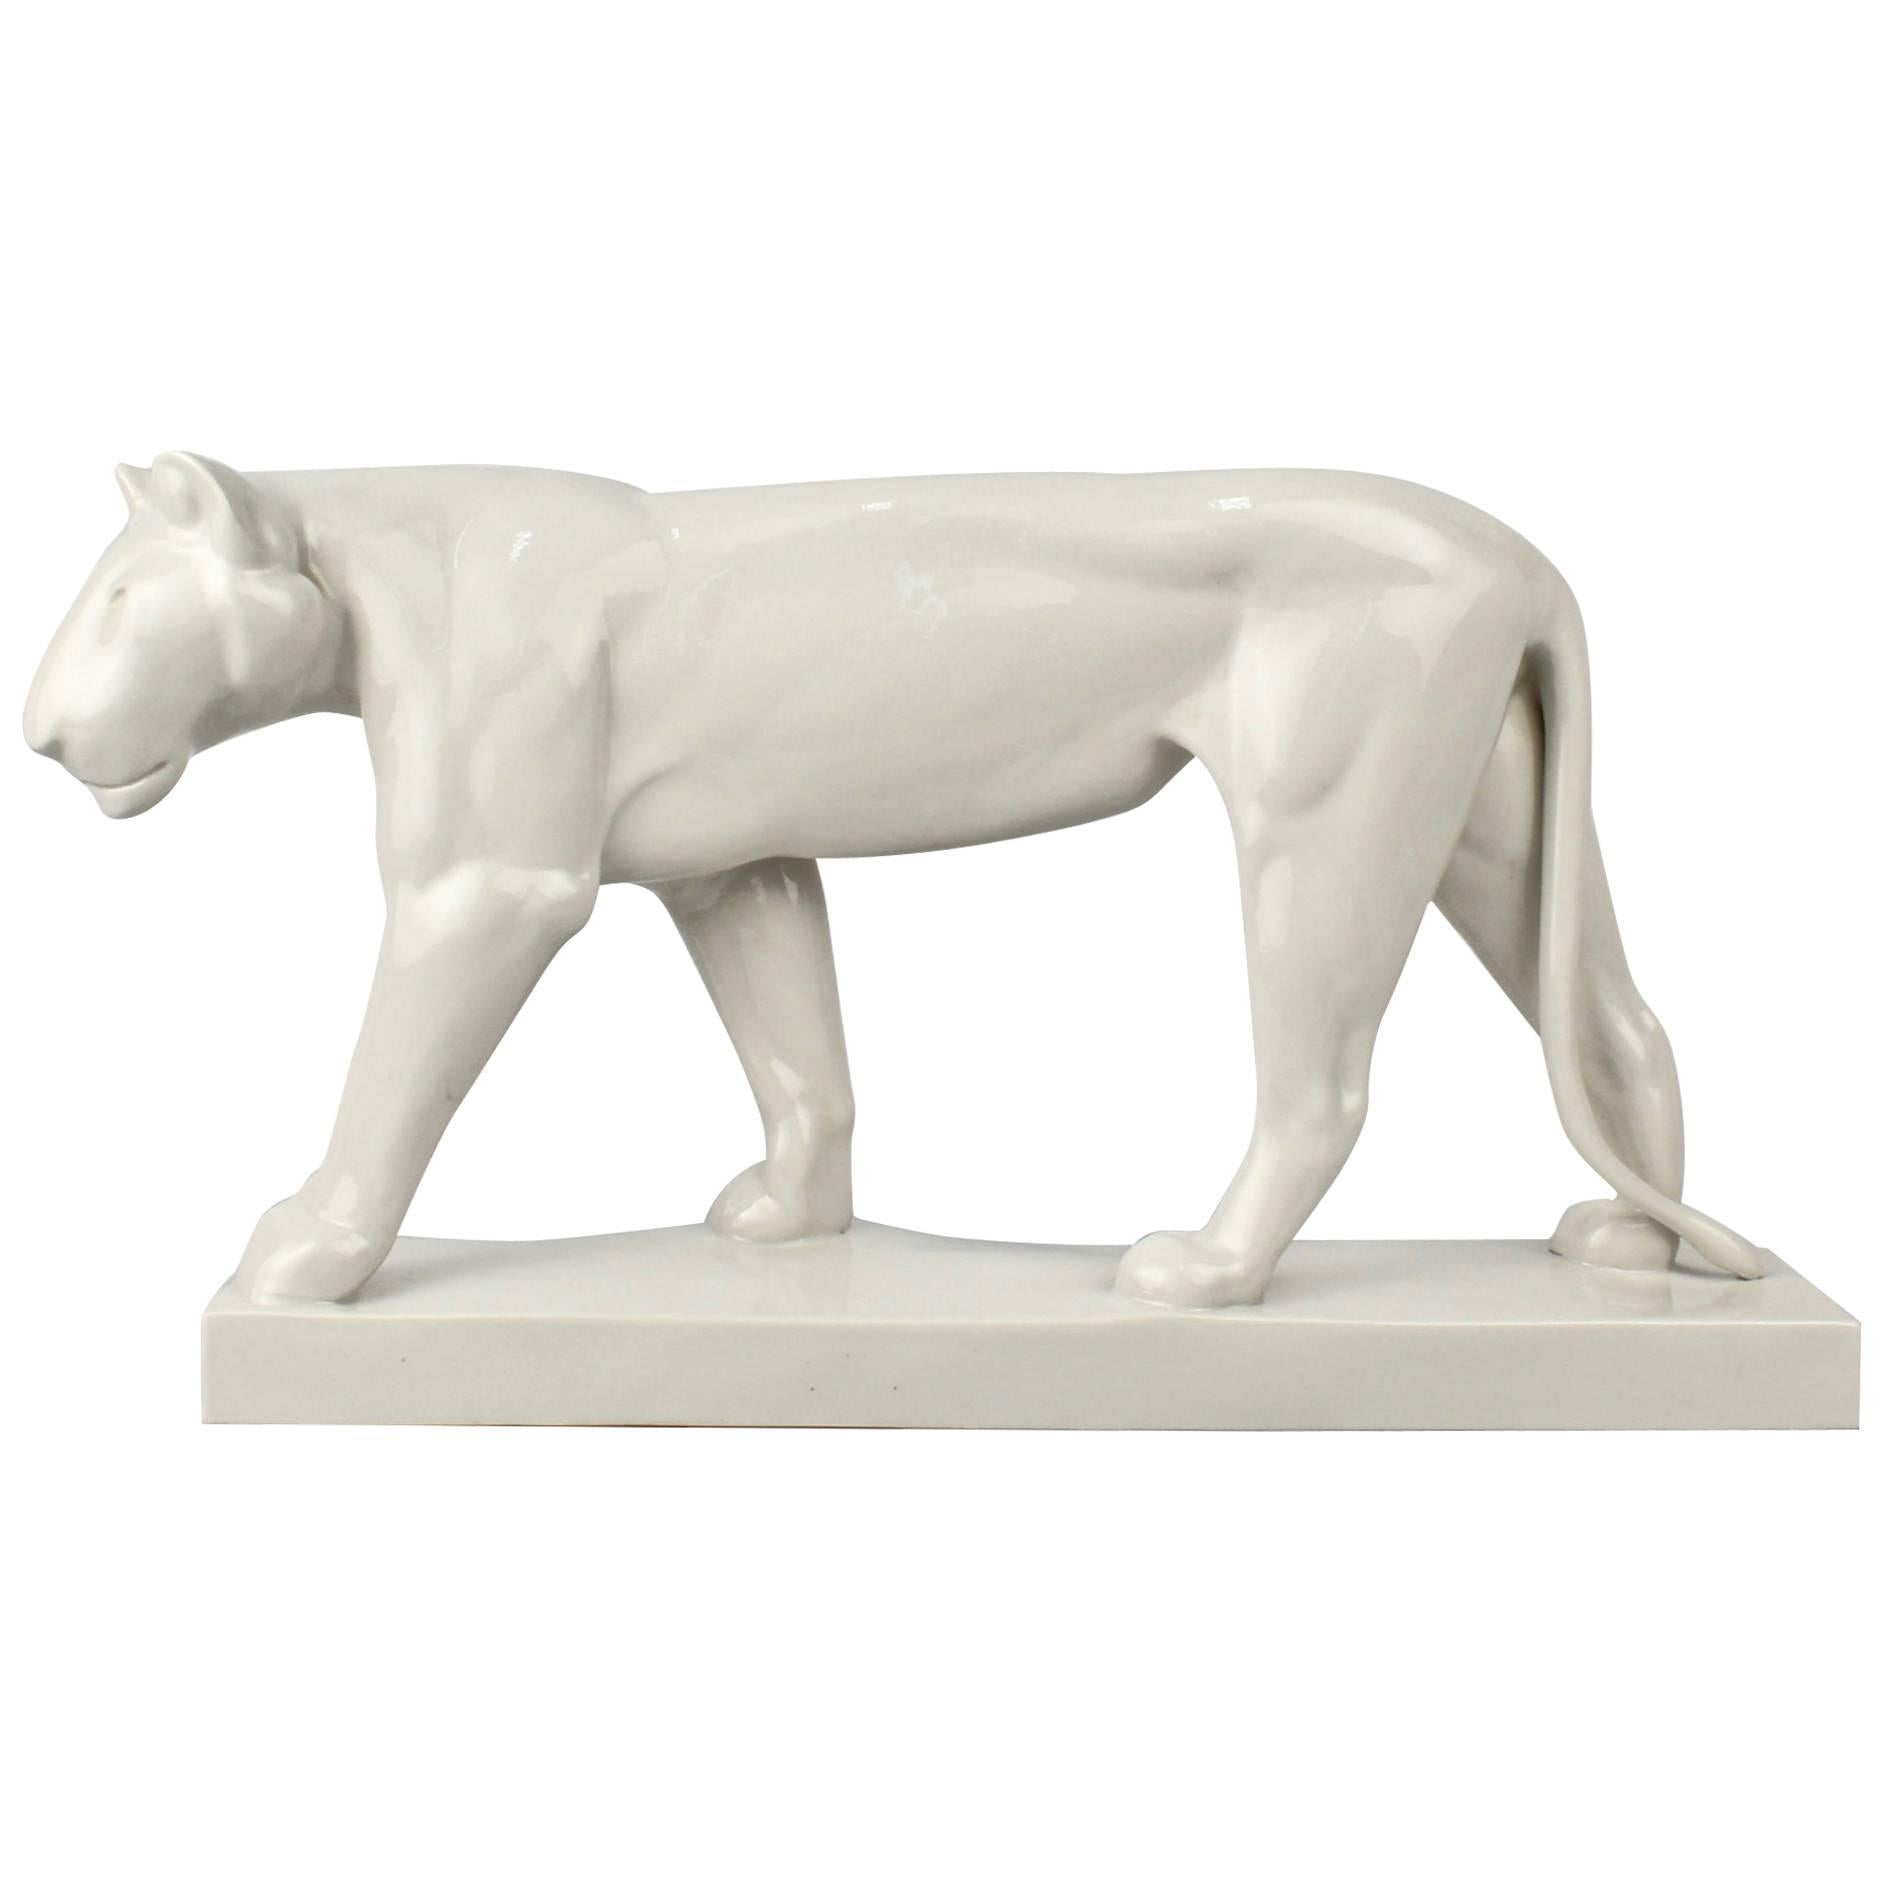 Jugendstil White Porcelain Lion Figurine by Gerhard Marcks for Schwarzburger